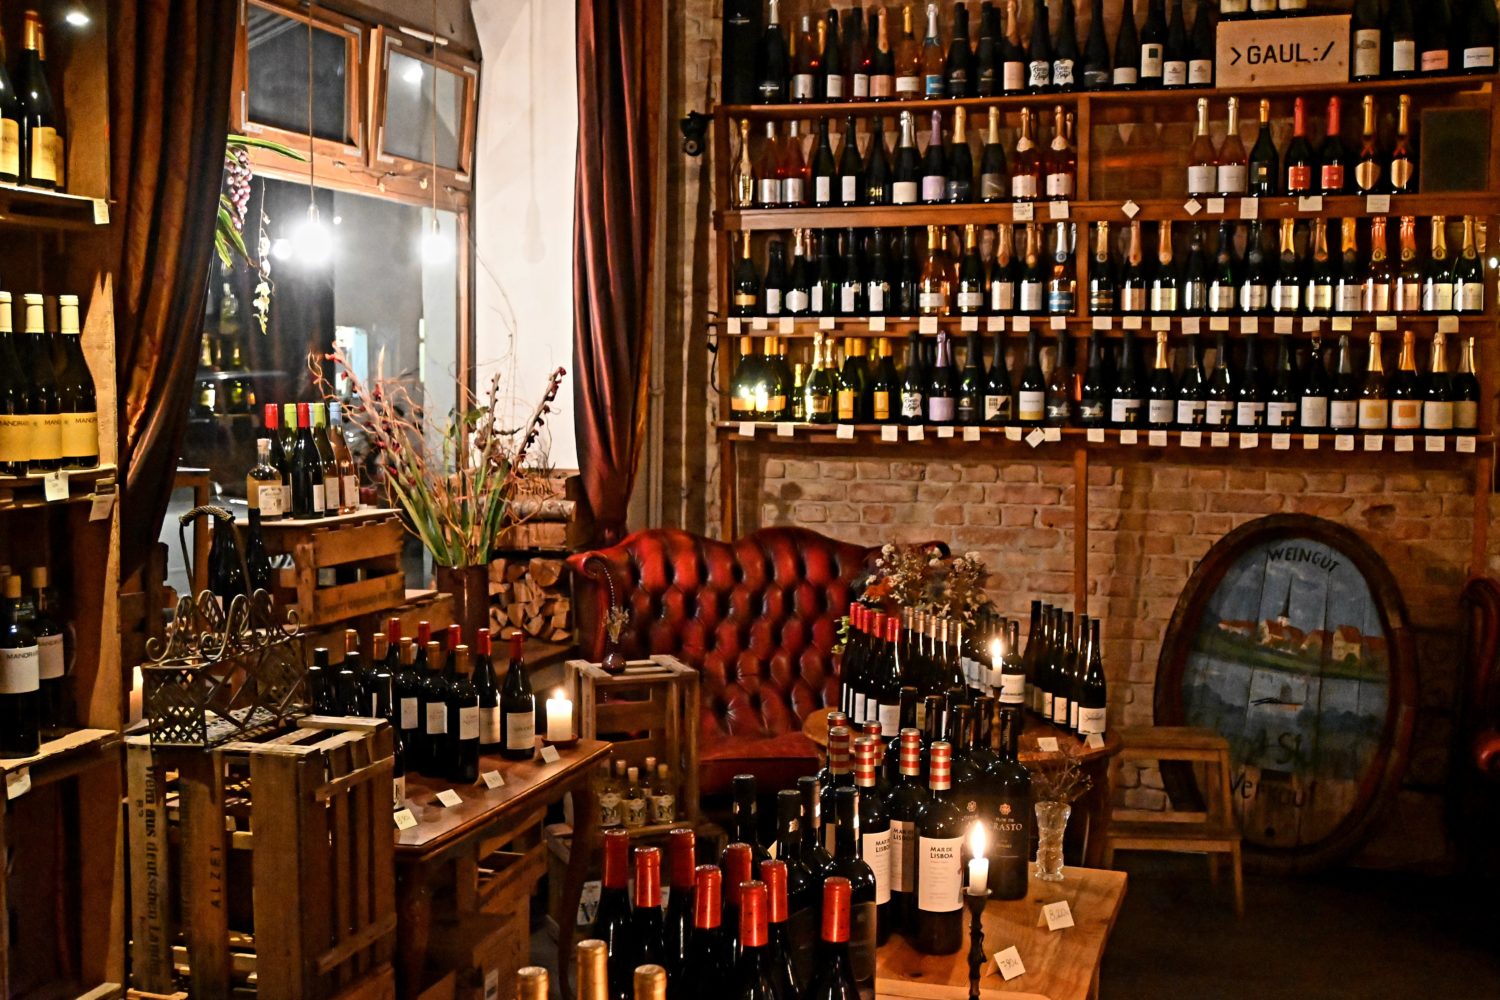 Gemütliche Wein- und Spirituosenhöhle: das Vin Aqua Vin in Neukölln hat neben großartigen Weinen auch Spirituosen im Angebot. Weinempfehlungen für den Winter